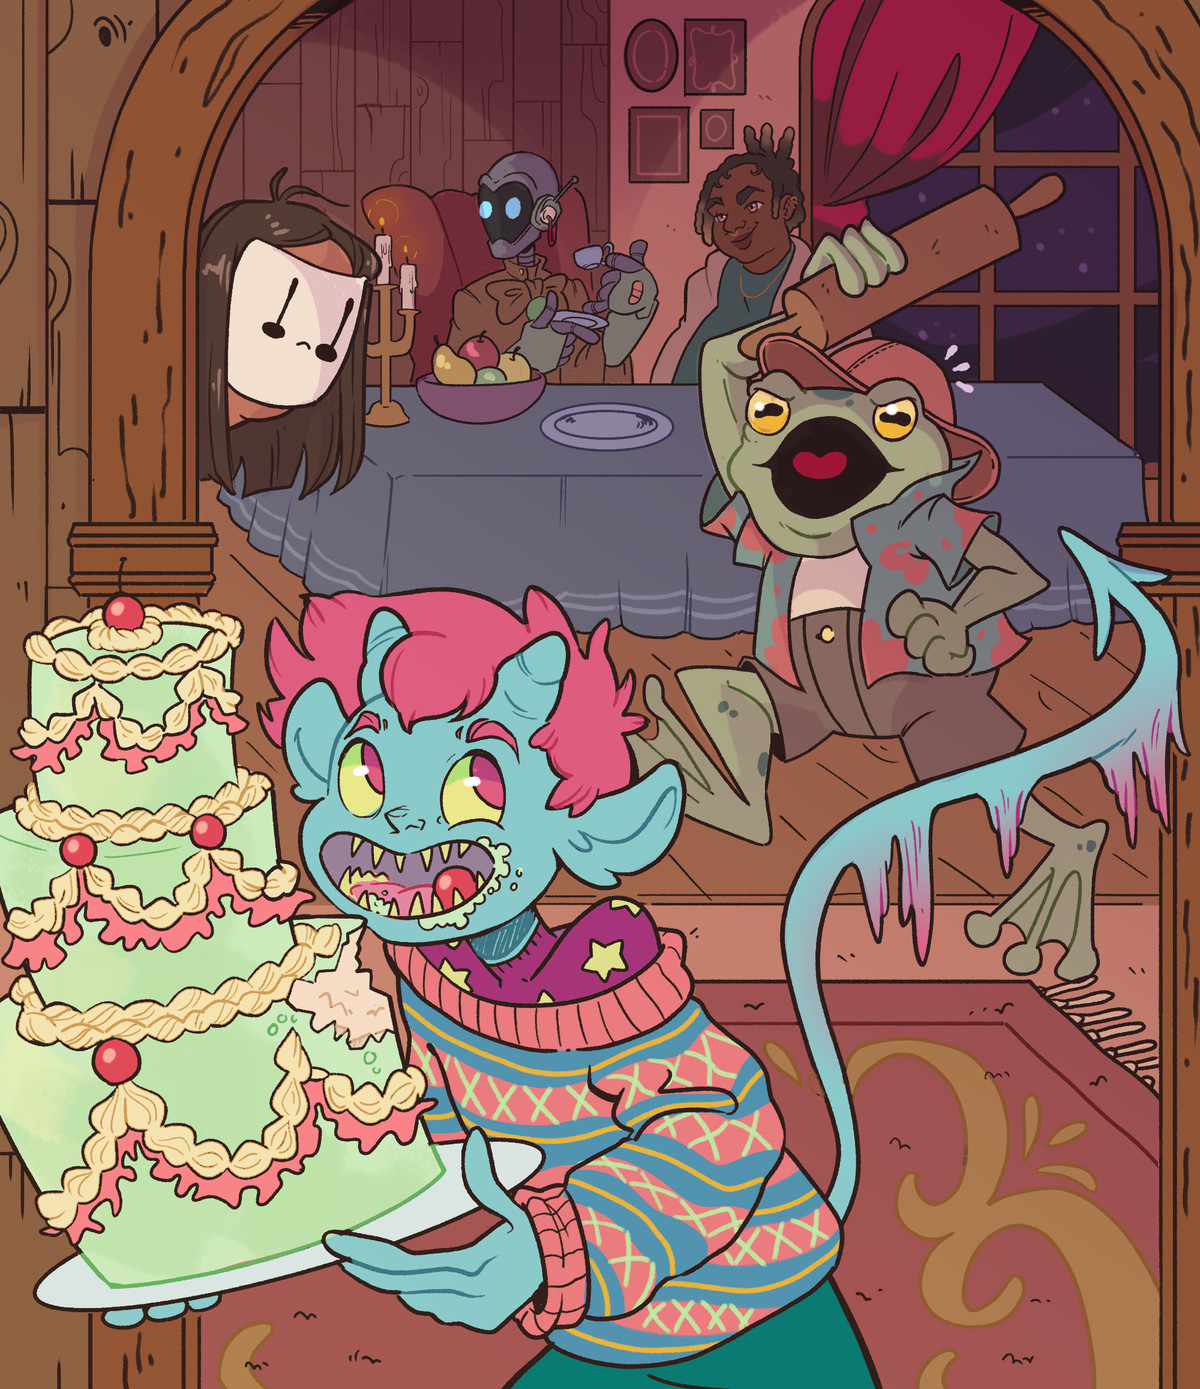 Una versione più grande dell'immagine ritagliata, che mostra più personaggi del bead and breakfast.  Includono una persona di colore, un robot, una rana e qualcuno con una maschera bianca.